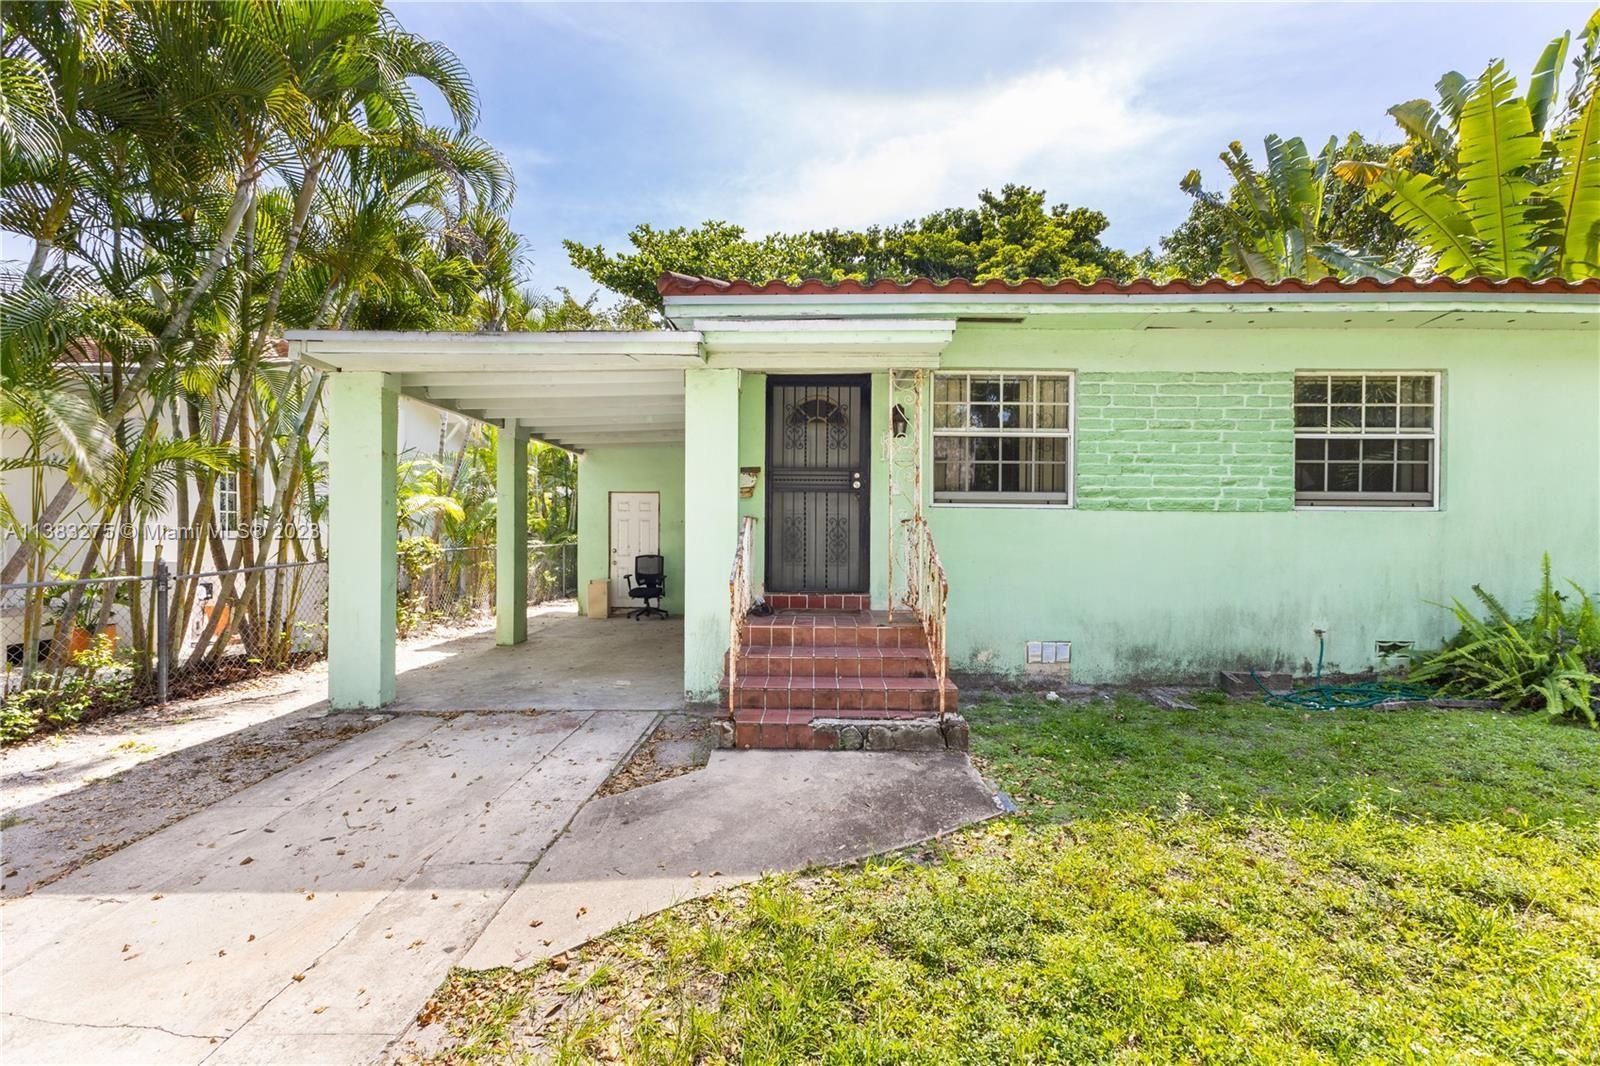 Real estate property located at 4725 Miami Ct, Miami-Dade County, Miami, FL